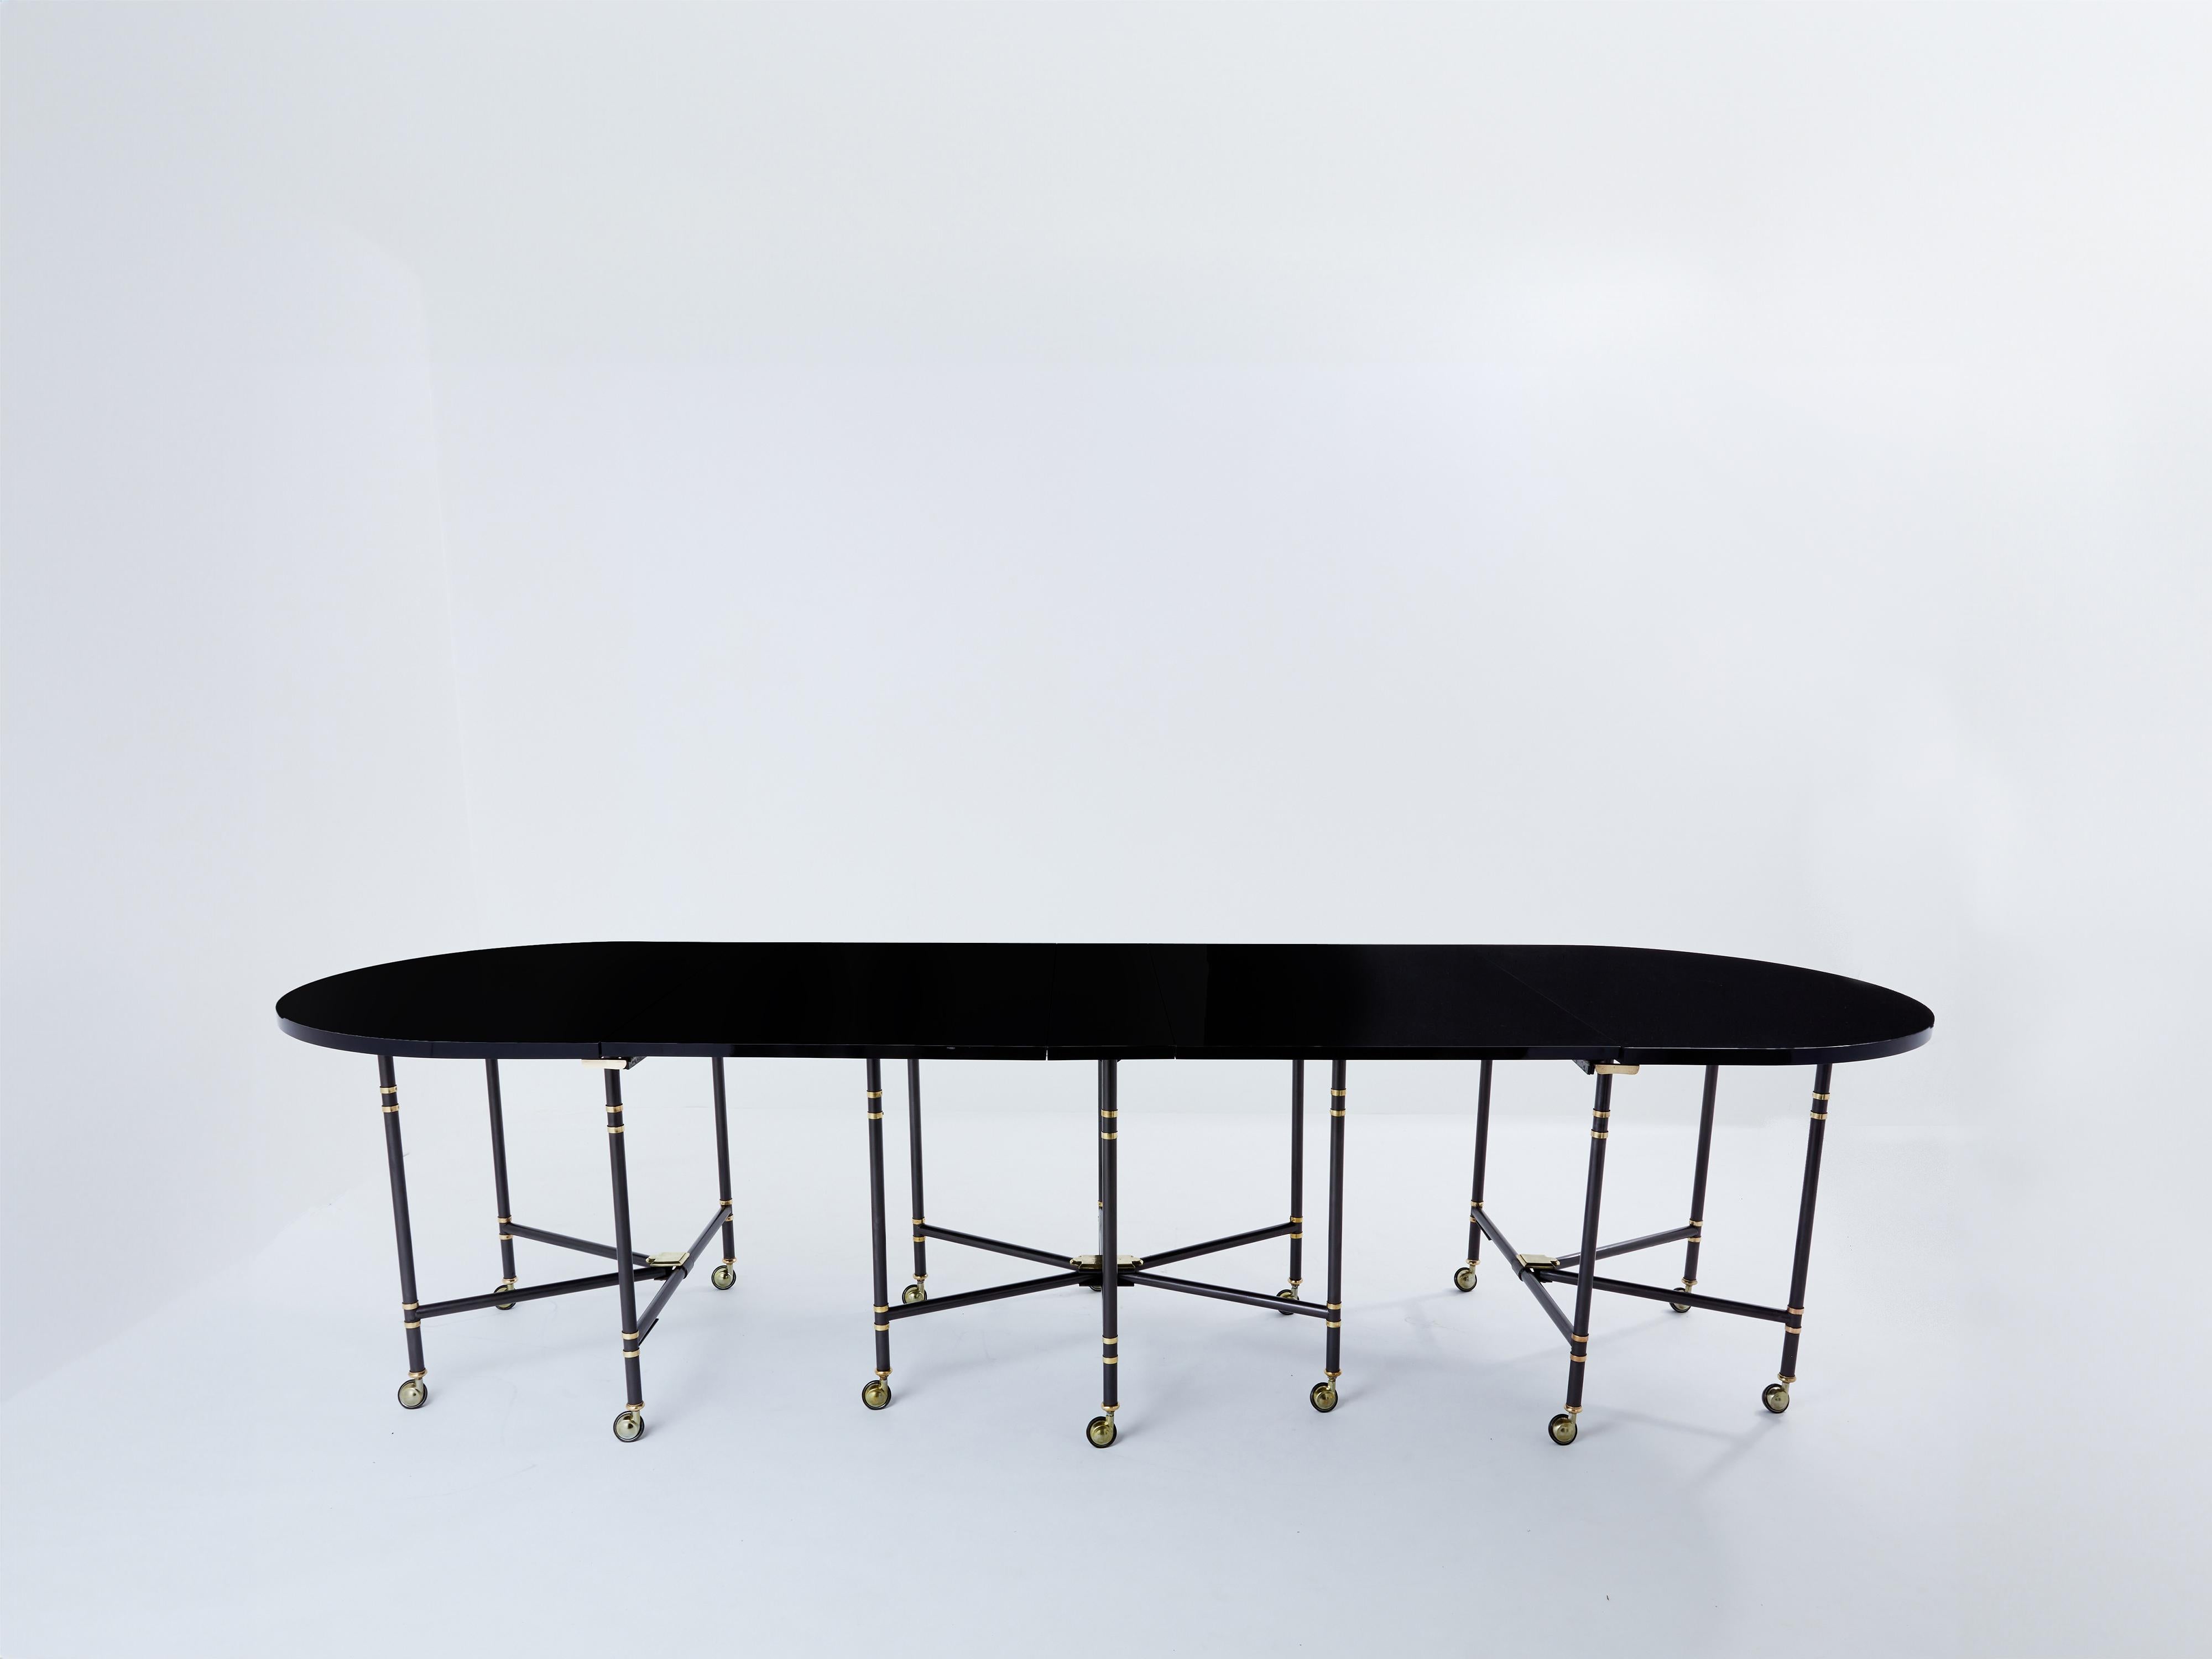 Cette longue table à rallonge ovale au plateau laqué noir est l'une des pièces les plus emblématiques de la Maison Jansen. Baptisée Royal, cette table a été spécialement conçue par Pierre Delbée pour l'actrice française Jacqueline Delubac au début